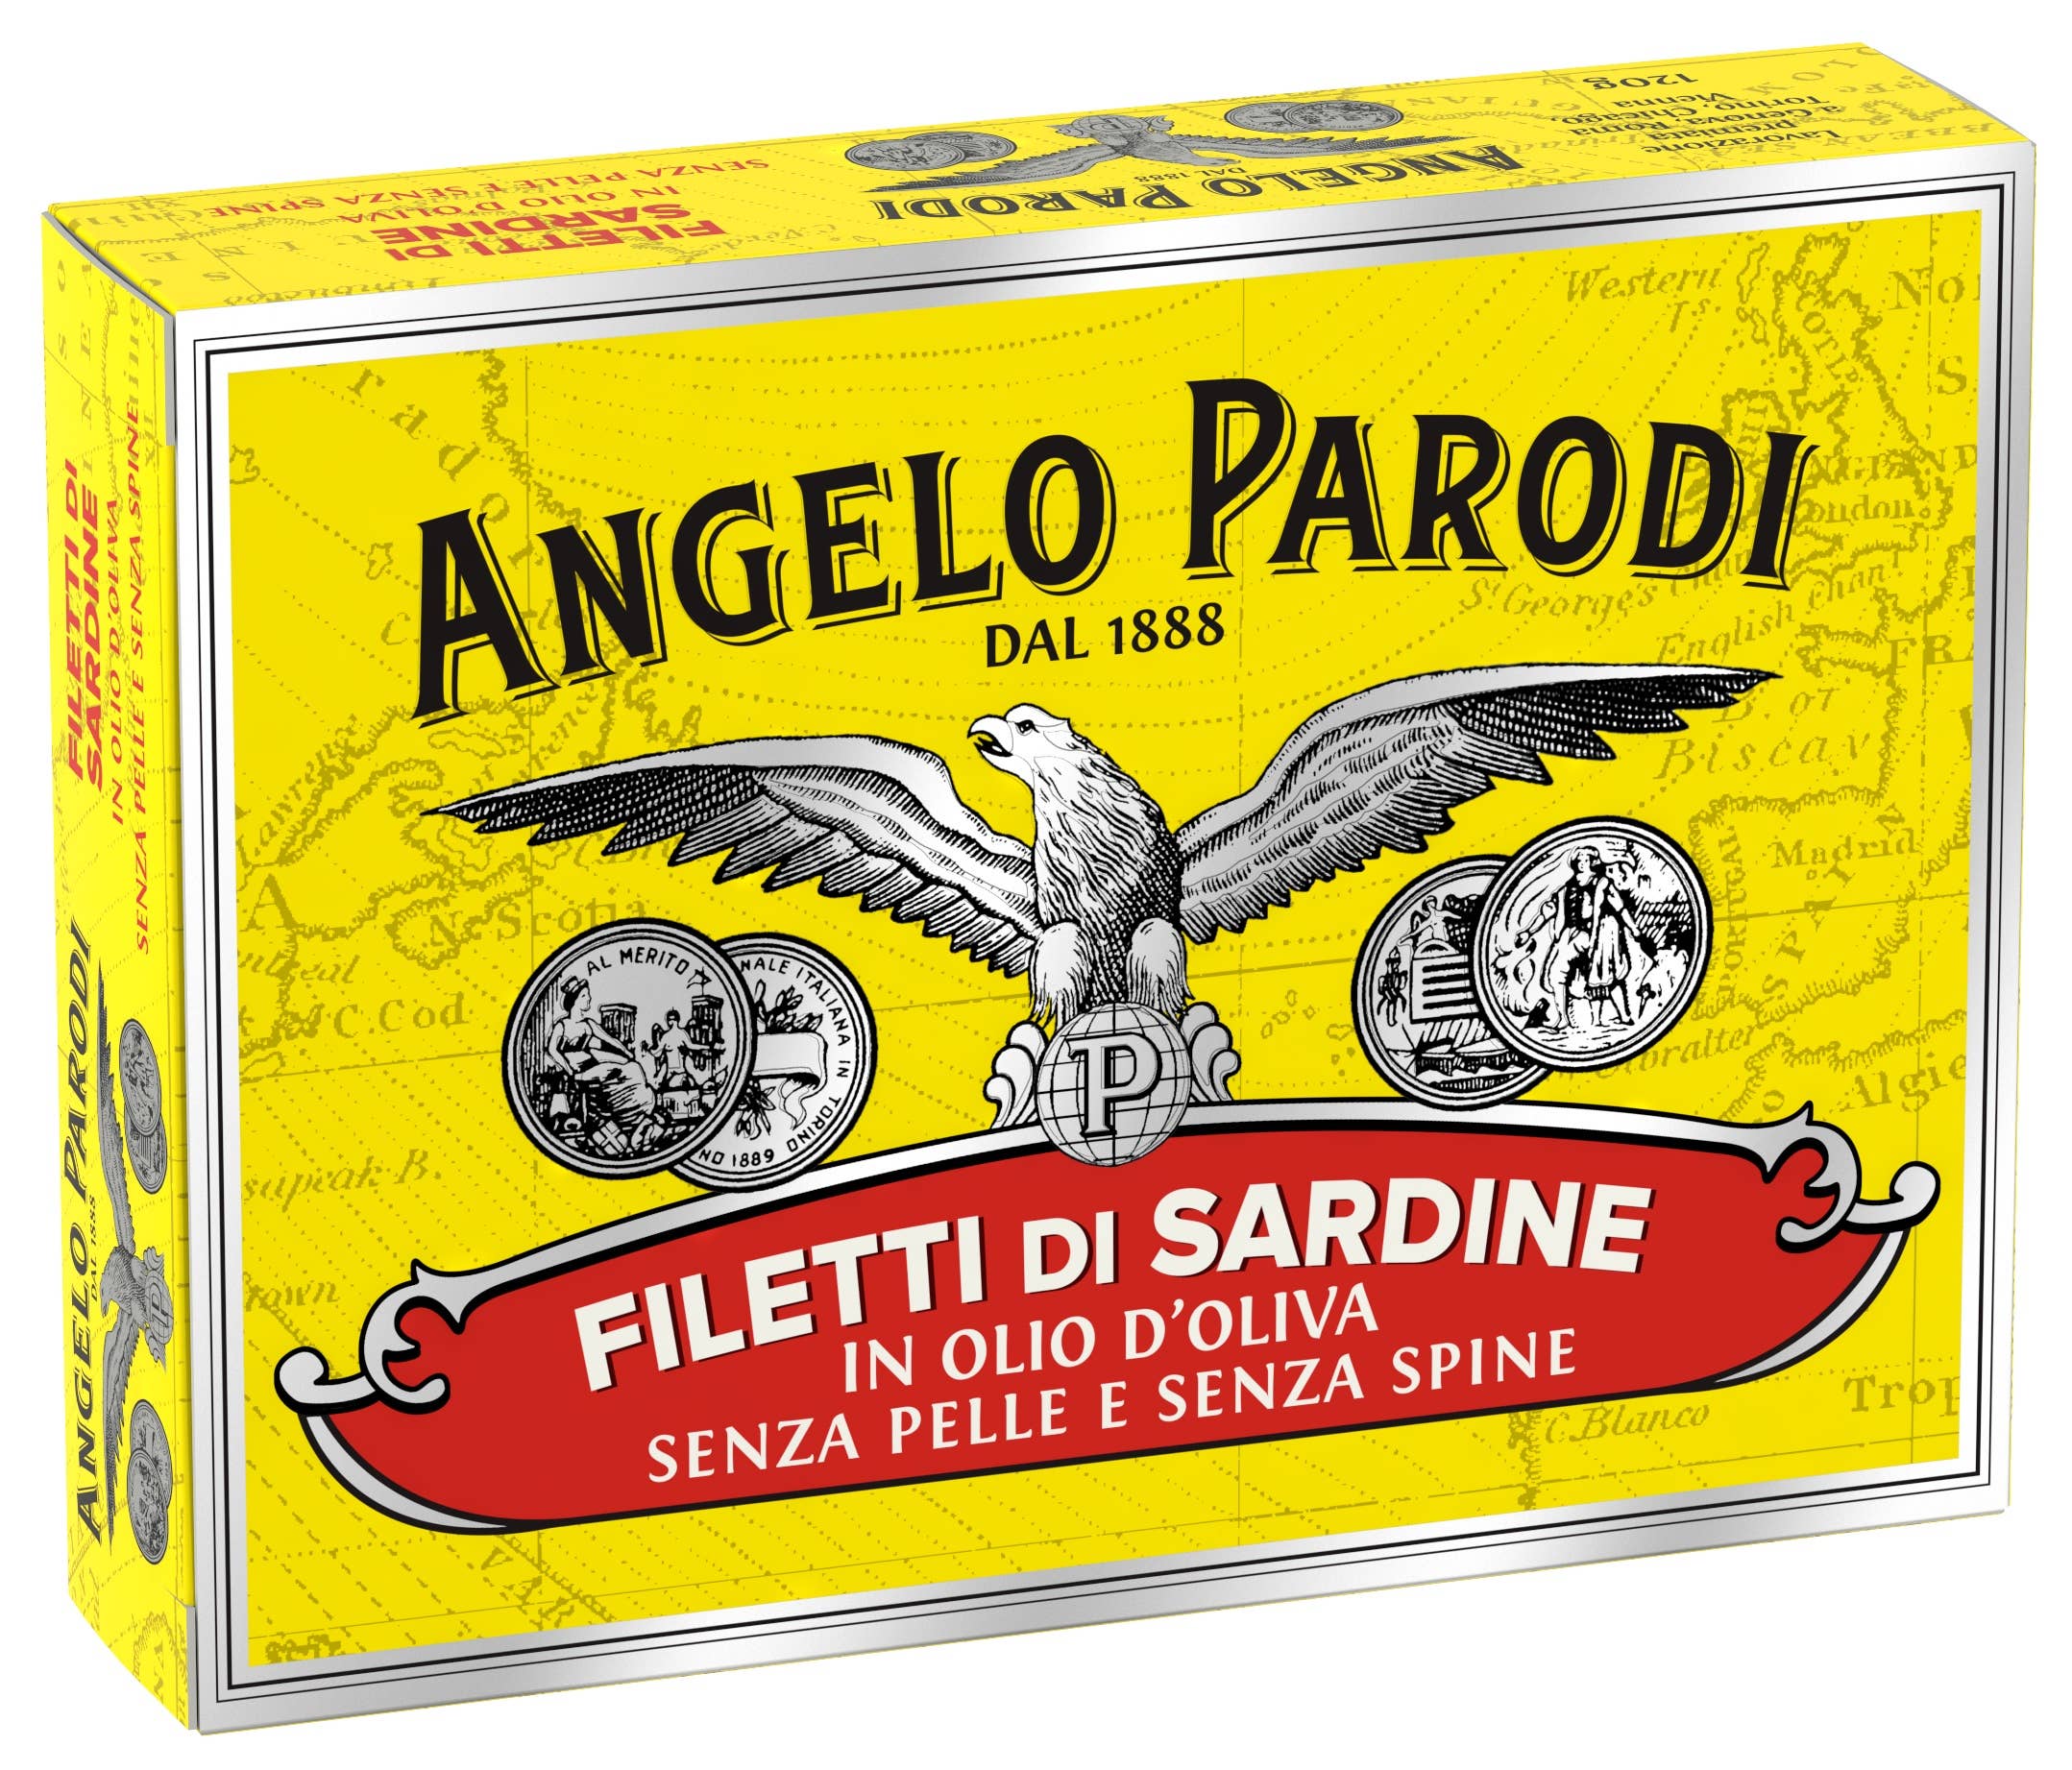 Angelo Parodi - Boneless and Skinless Sardines in Olive Oil